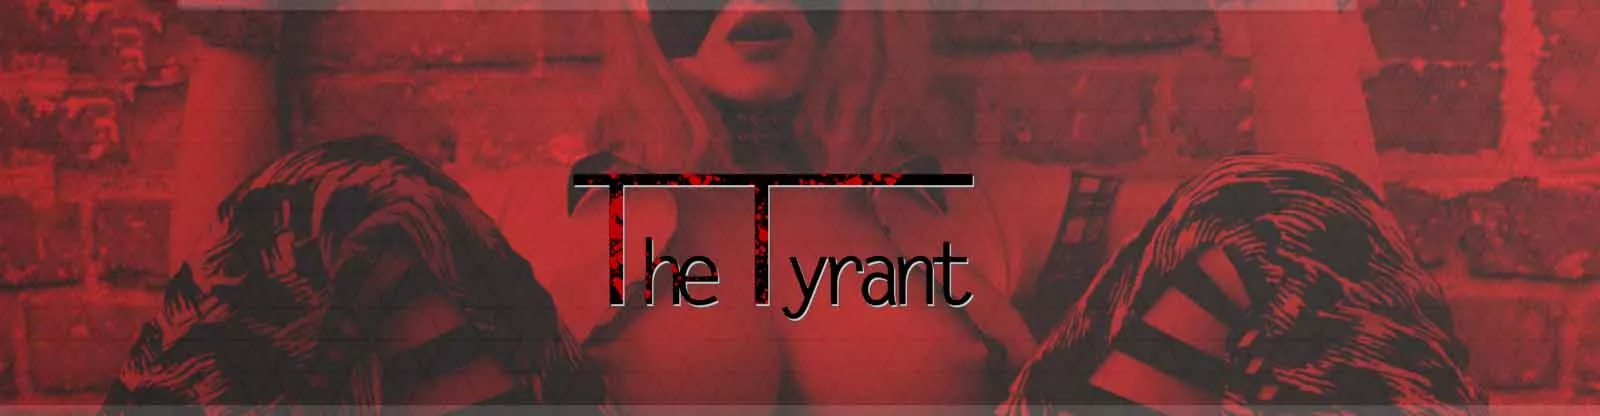 Die Tyrant 3d seks spel, porn spel, spel vir volwassenes